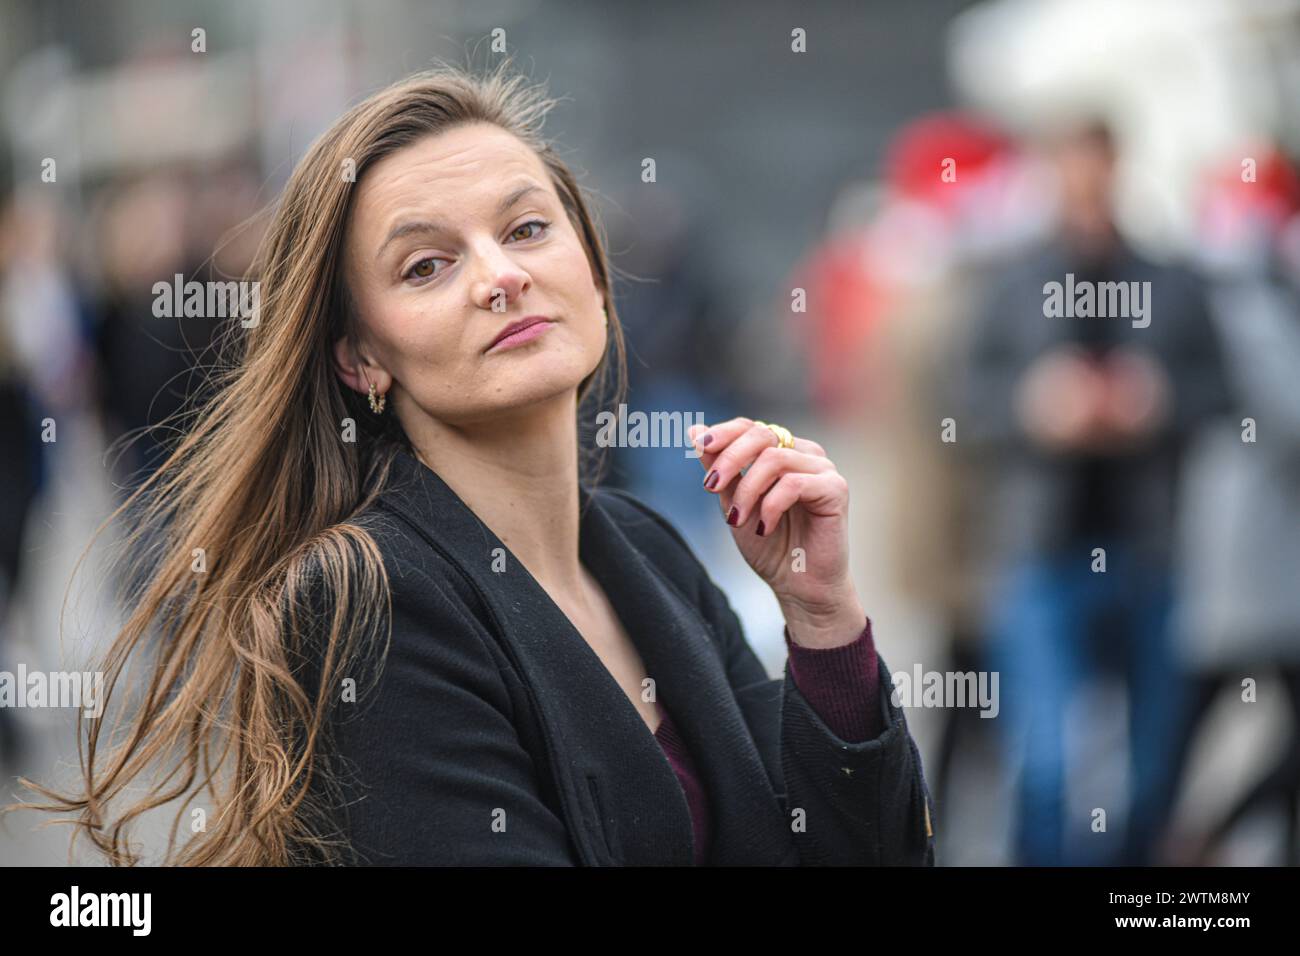 Femme croate sur la place Ban Jelacic, Zagreb, Croatie Banque D'Images